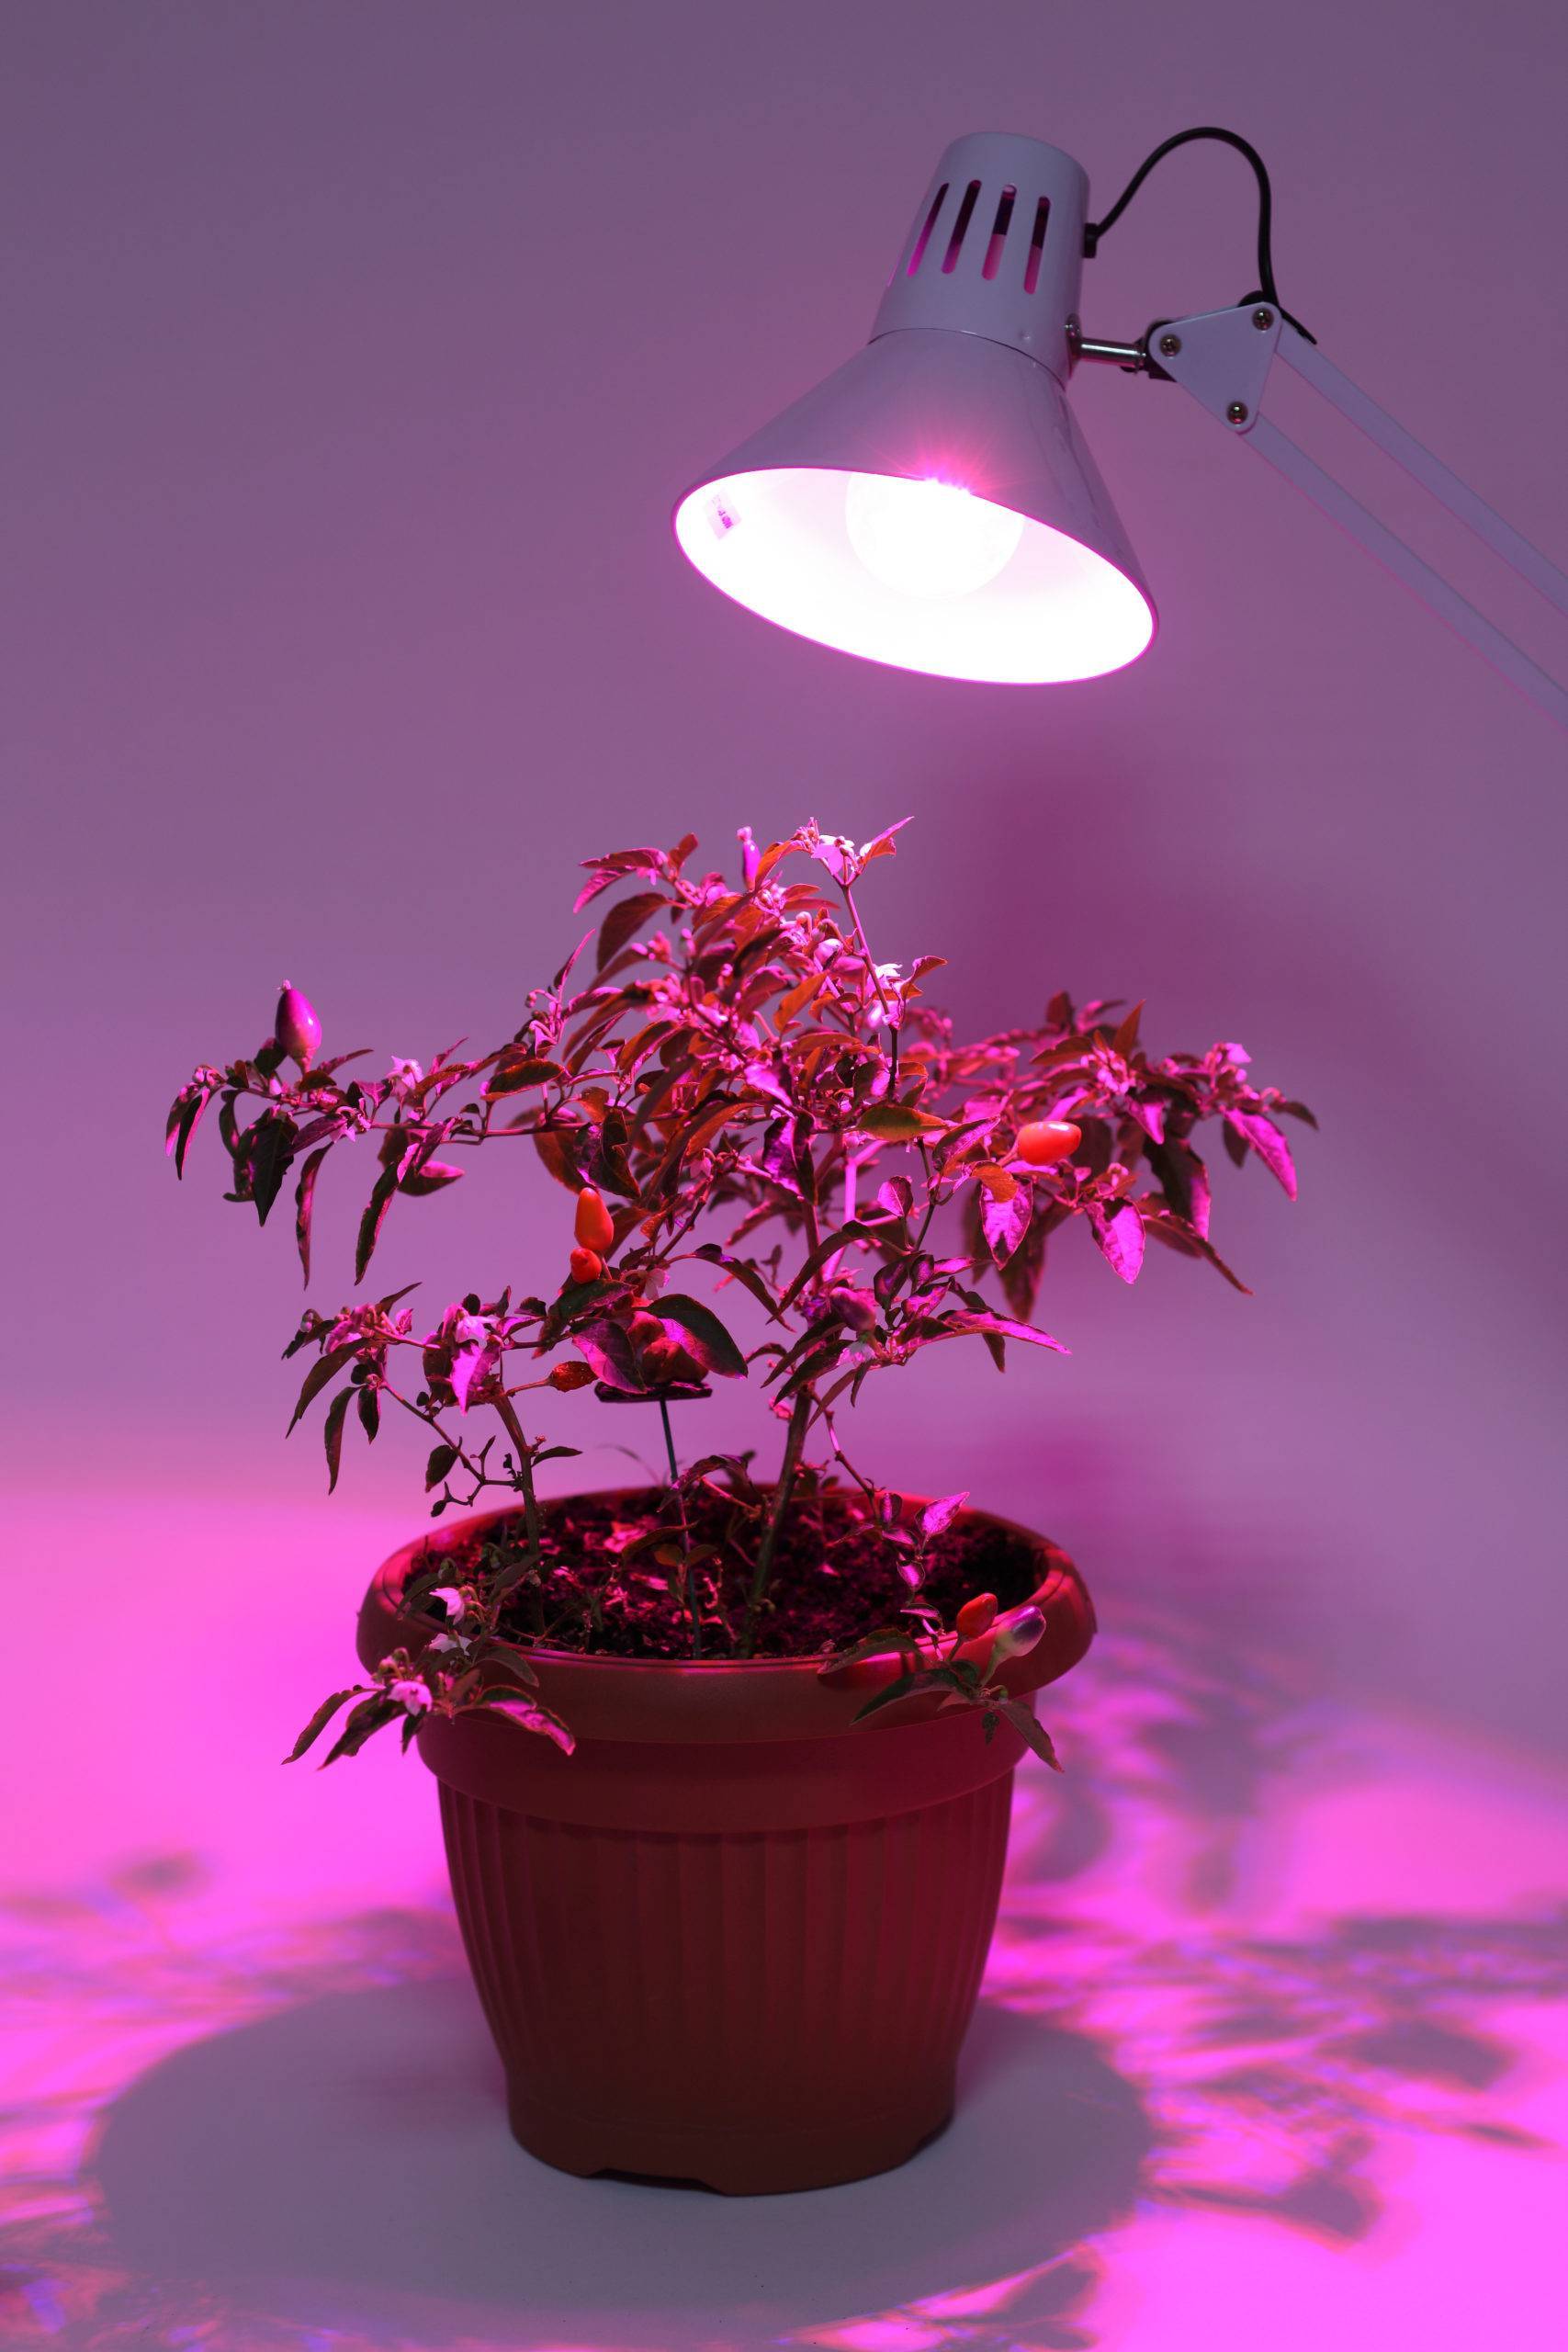 Правильная фитолампа — выбираем осветительный прибор для досветки растений. технические характеристики. фото — ботаничка.ru